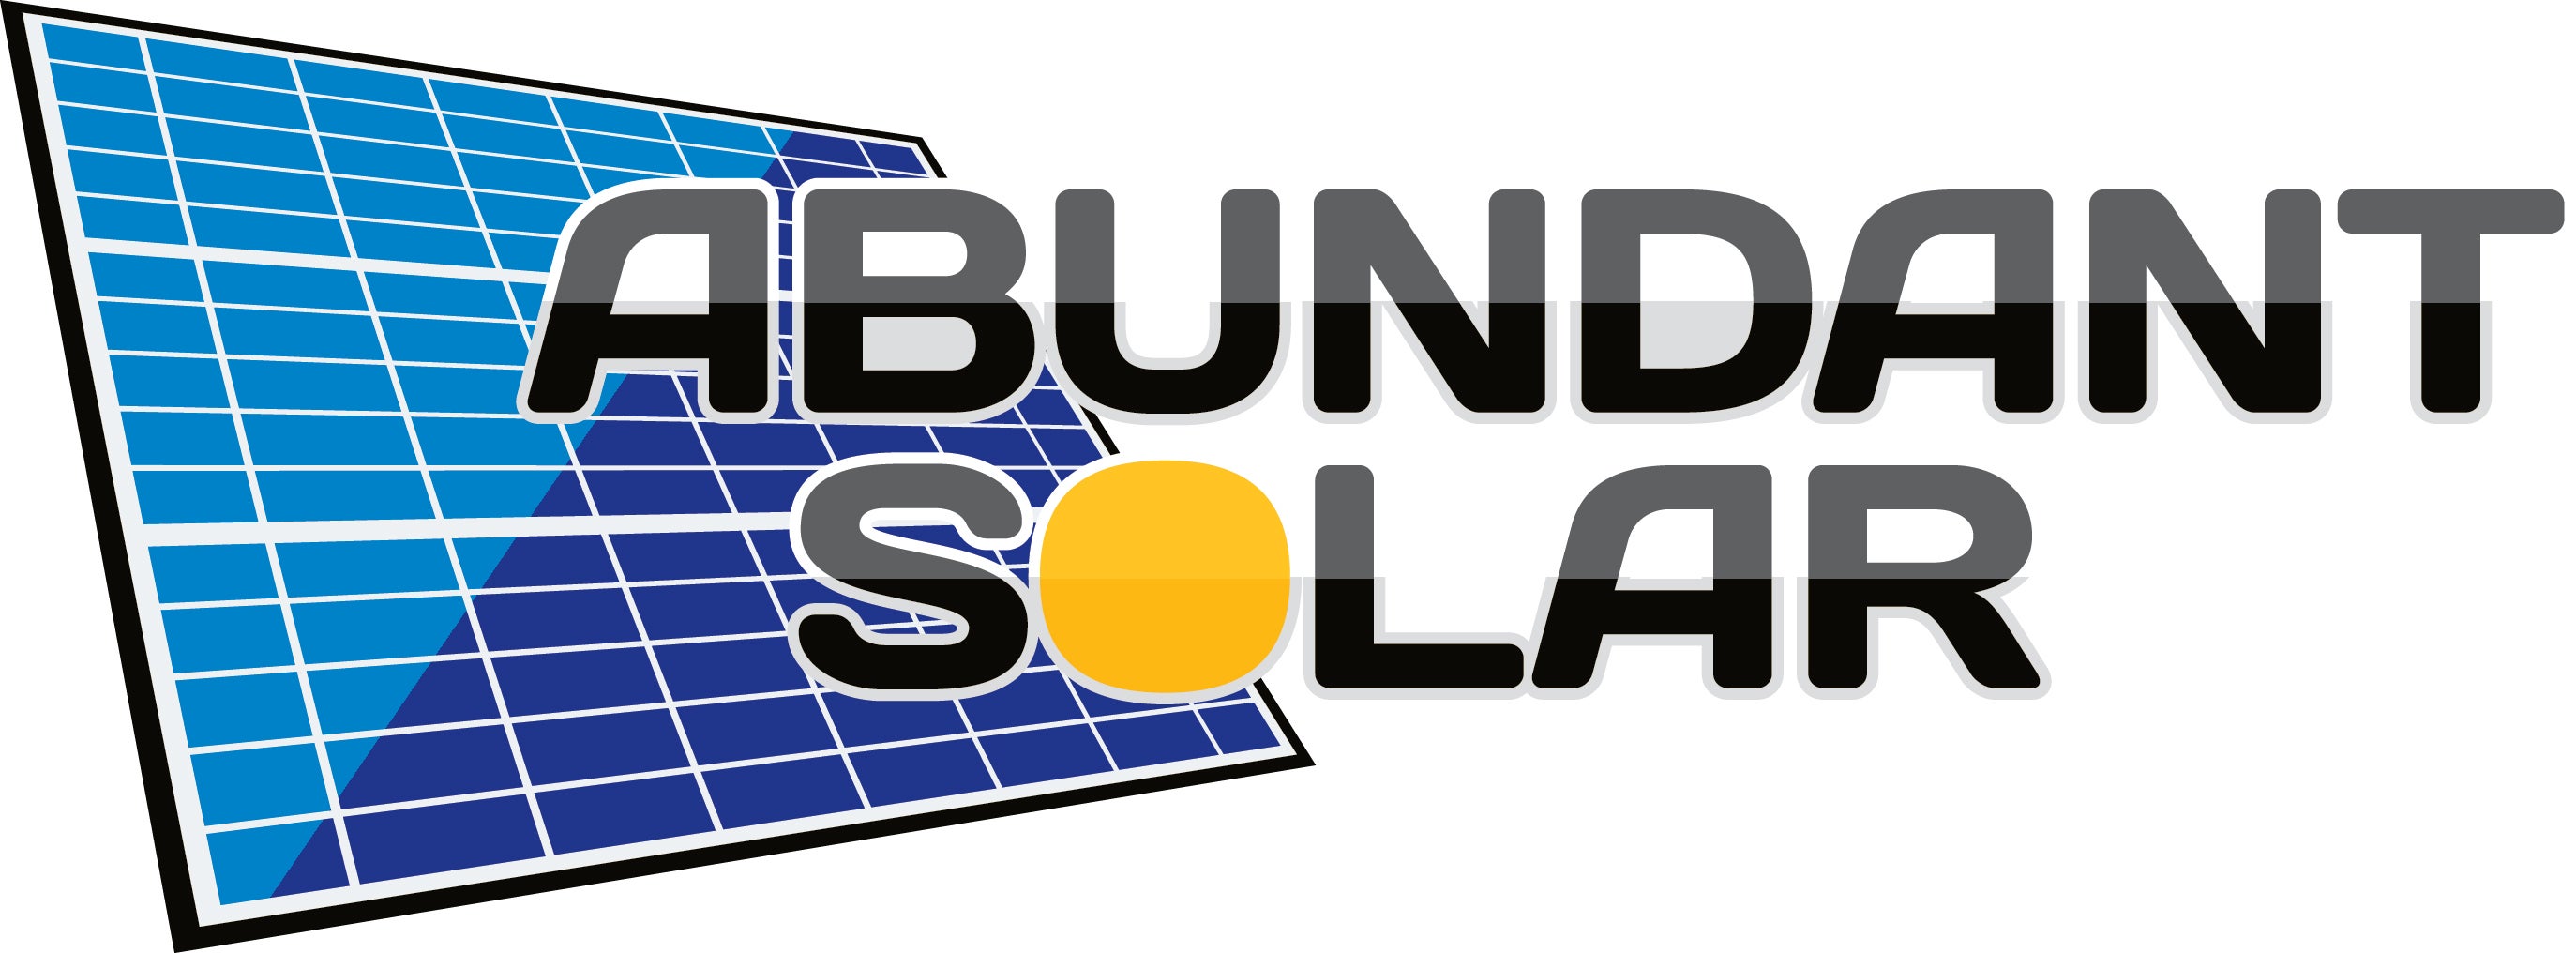 Abundant Solar LLC logo